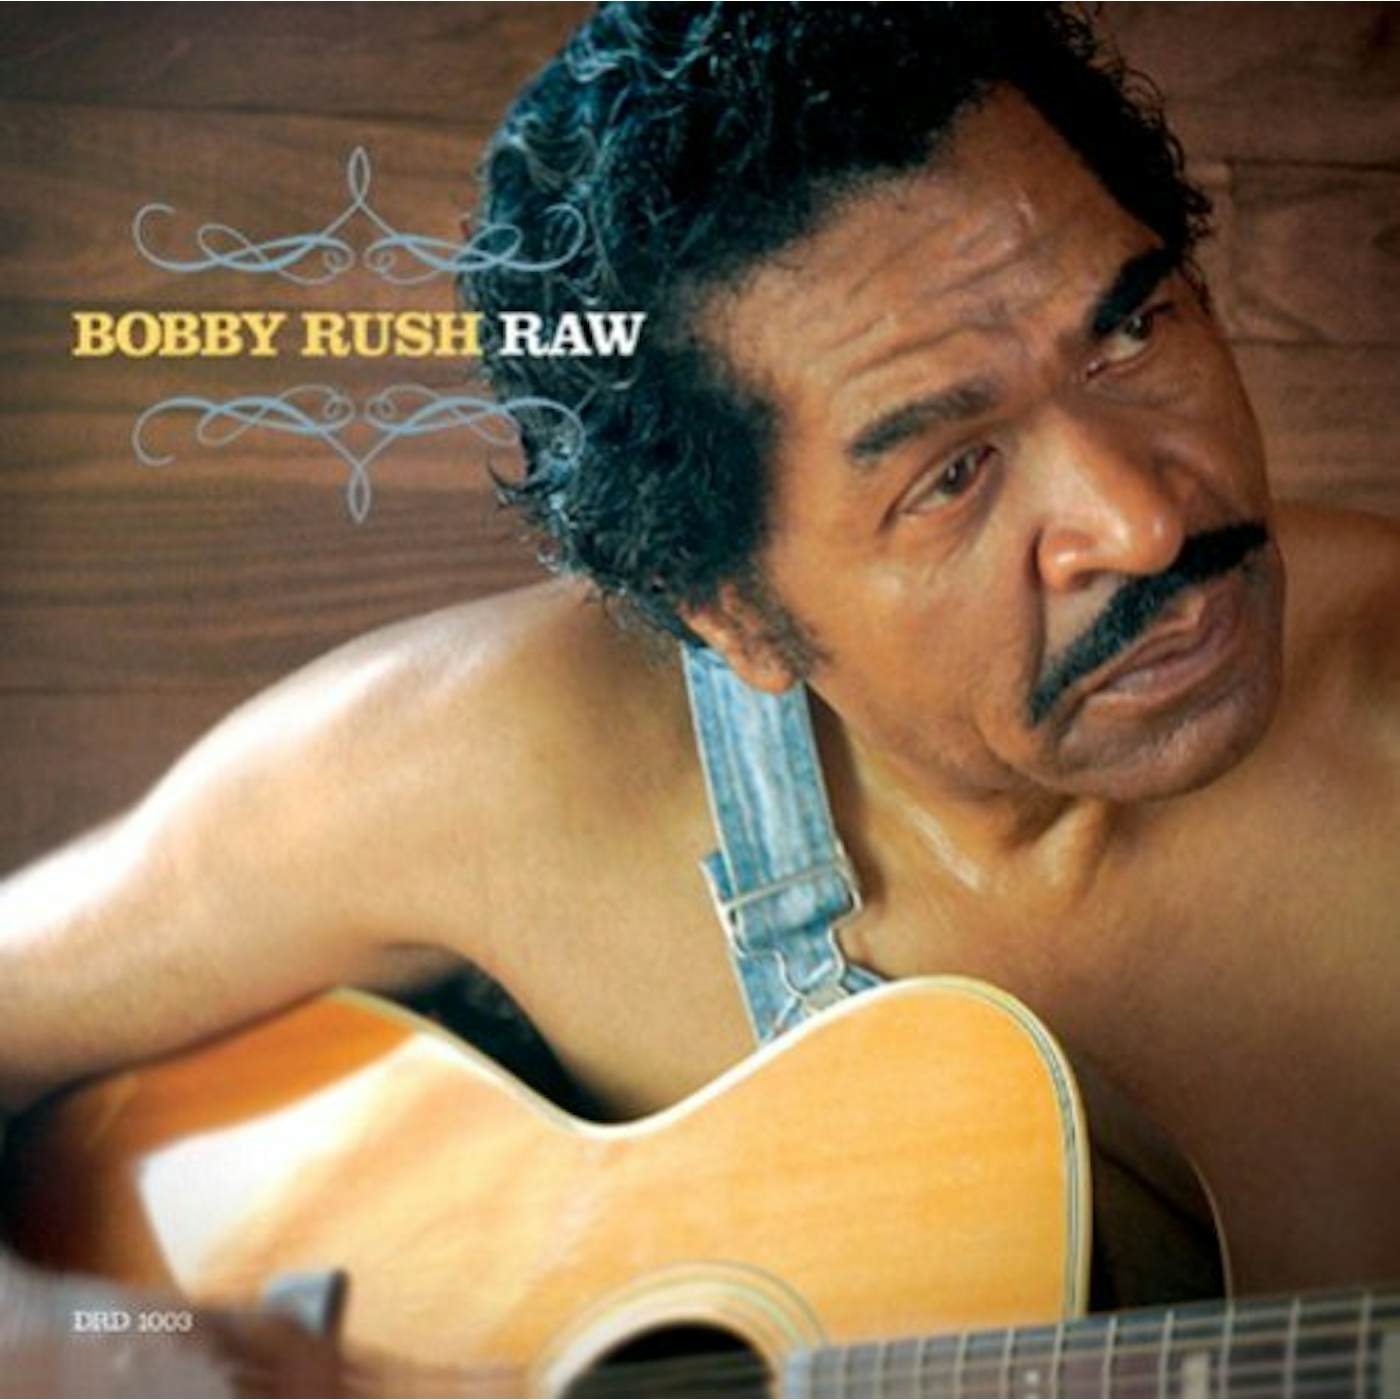 Bobby Rush RAW CD